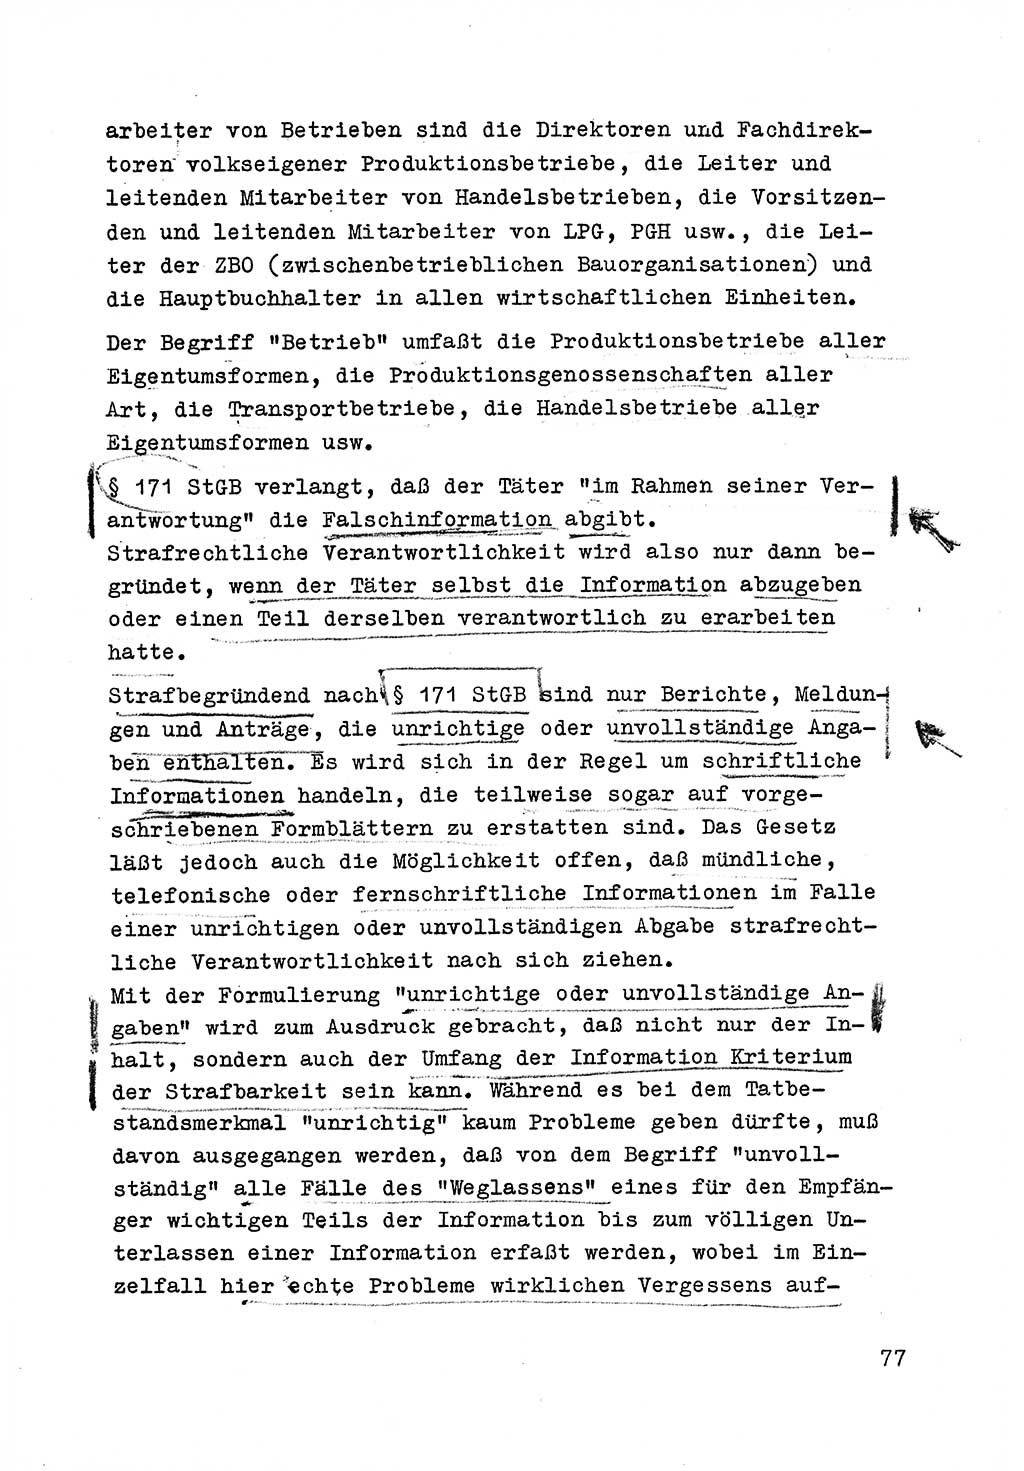 Strafrecht der DDR (Deutsche Demokratische Republik), Besonderer Teil, Lehrmaterial, Heft 6 1970, Seite 77 (Strafr. DDR BT Lehrmat. H. 6 1970, S. 77)